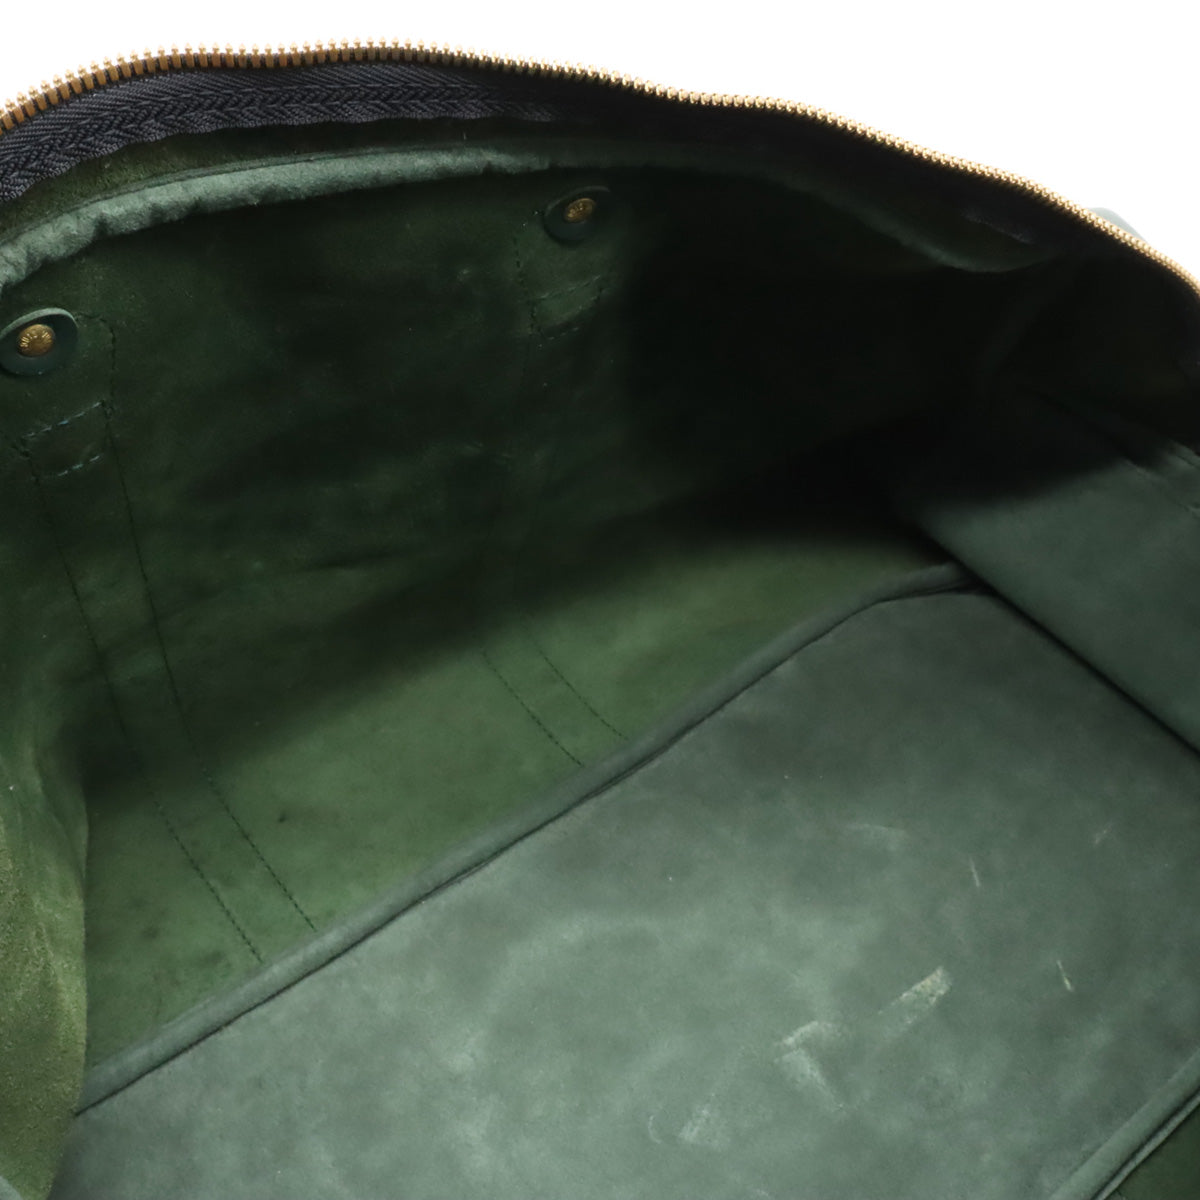 Green Louis Vuitton Taiga Kendall GM Travel Bag